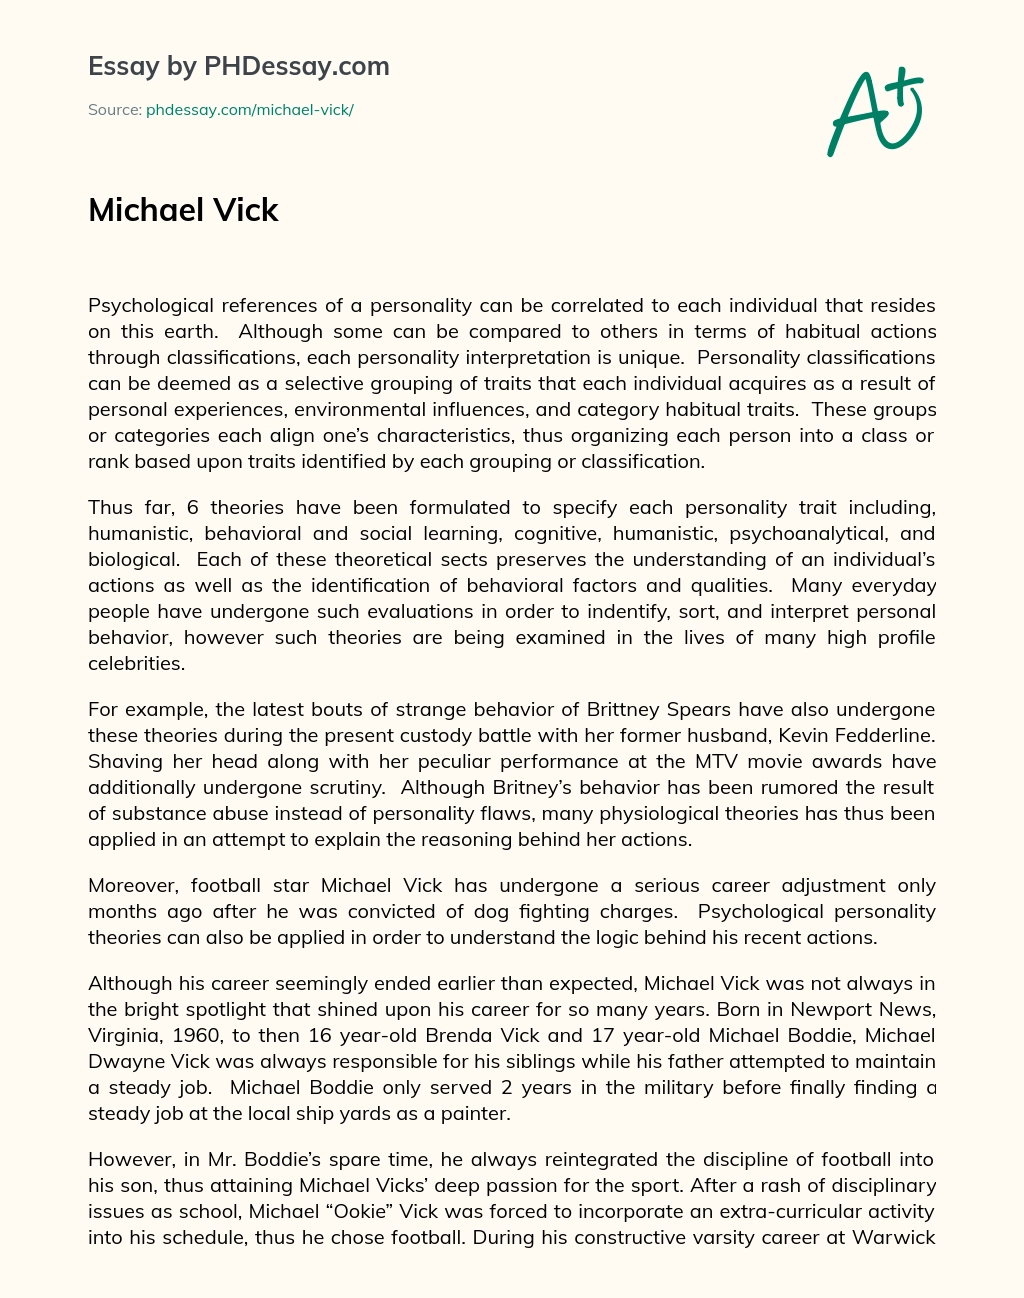 Michael Vick essay